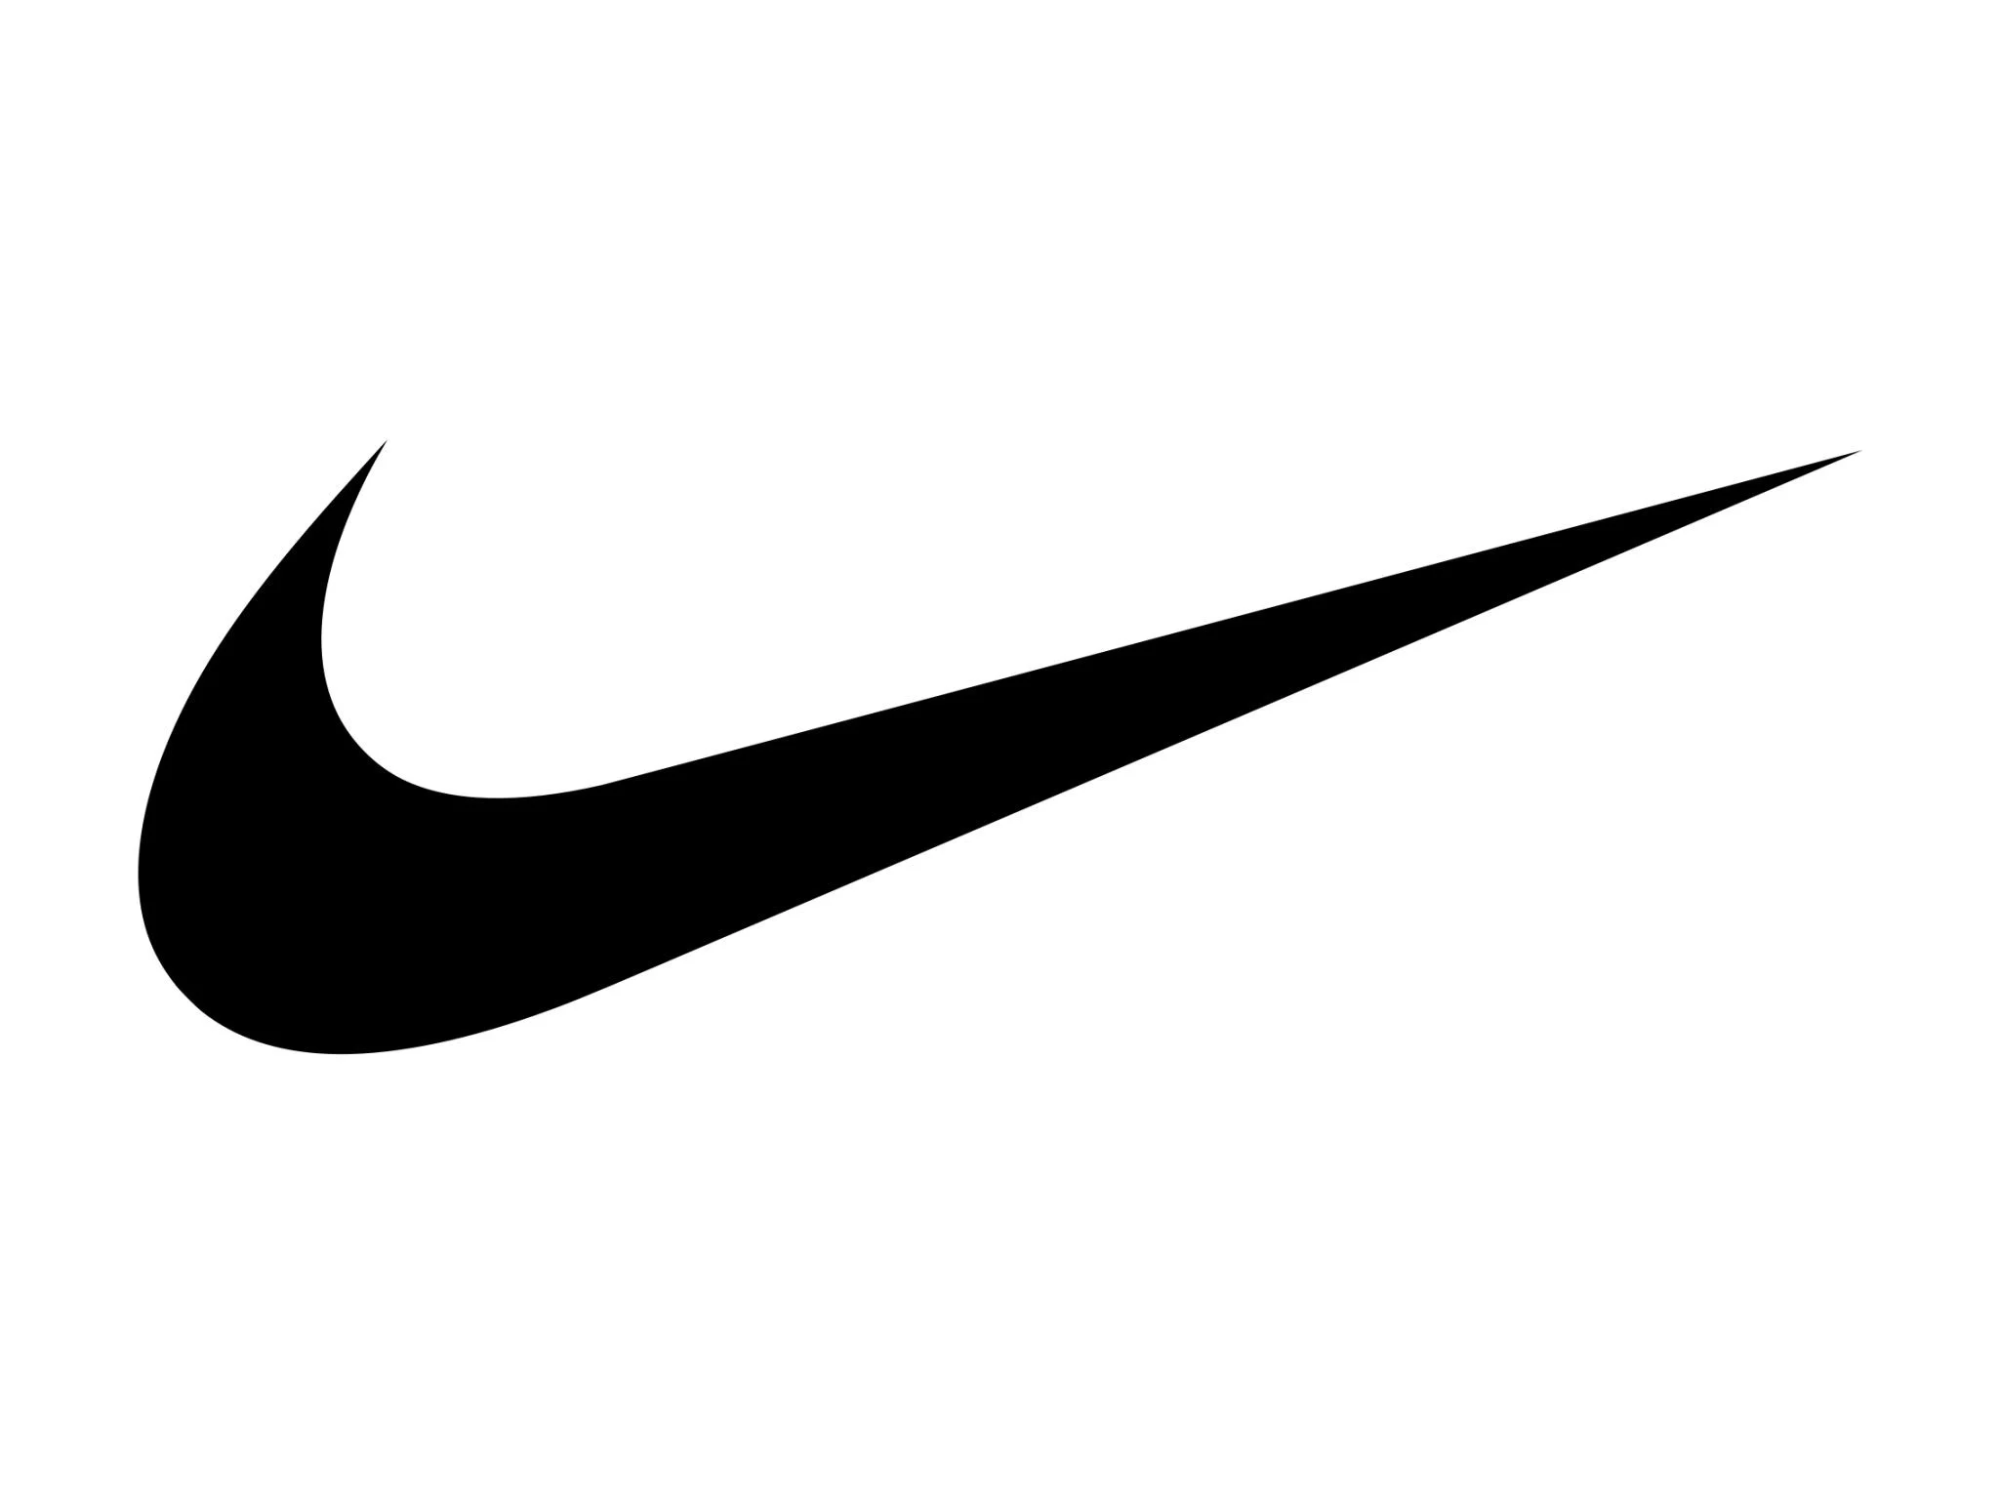 logo các hãng giày nổi tiếng